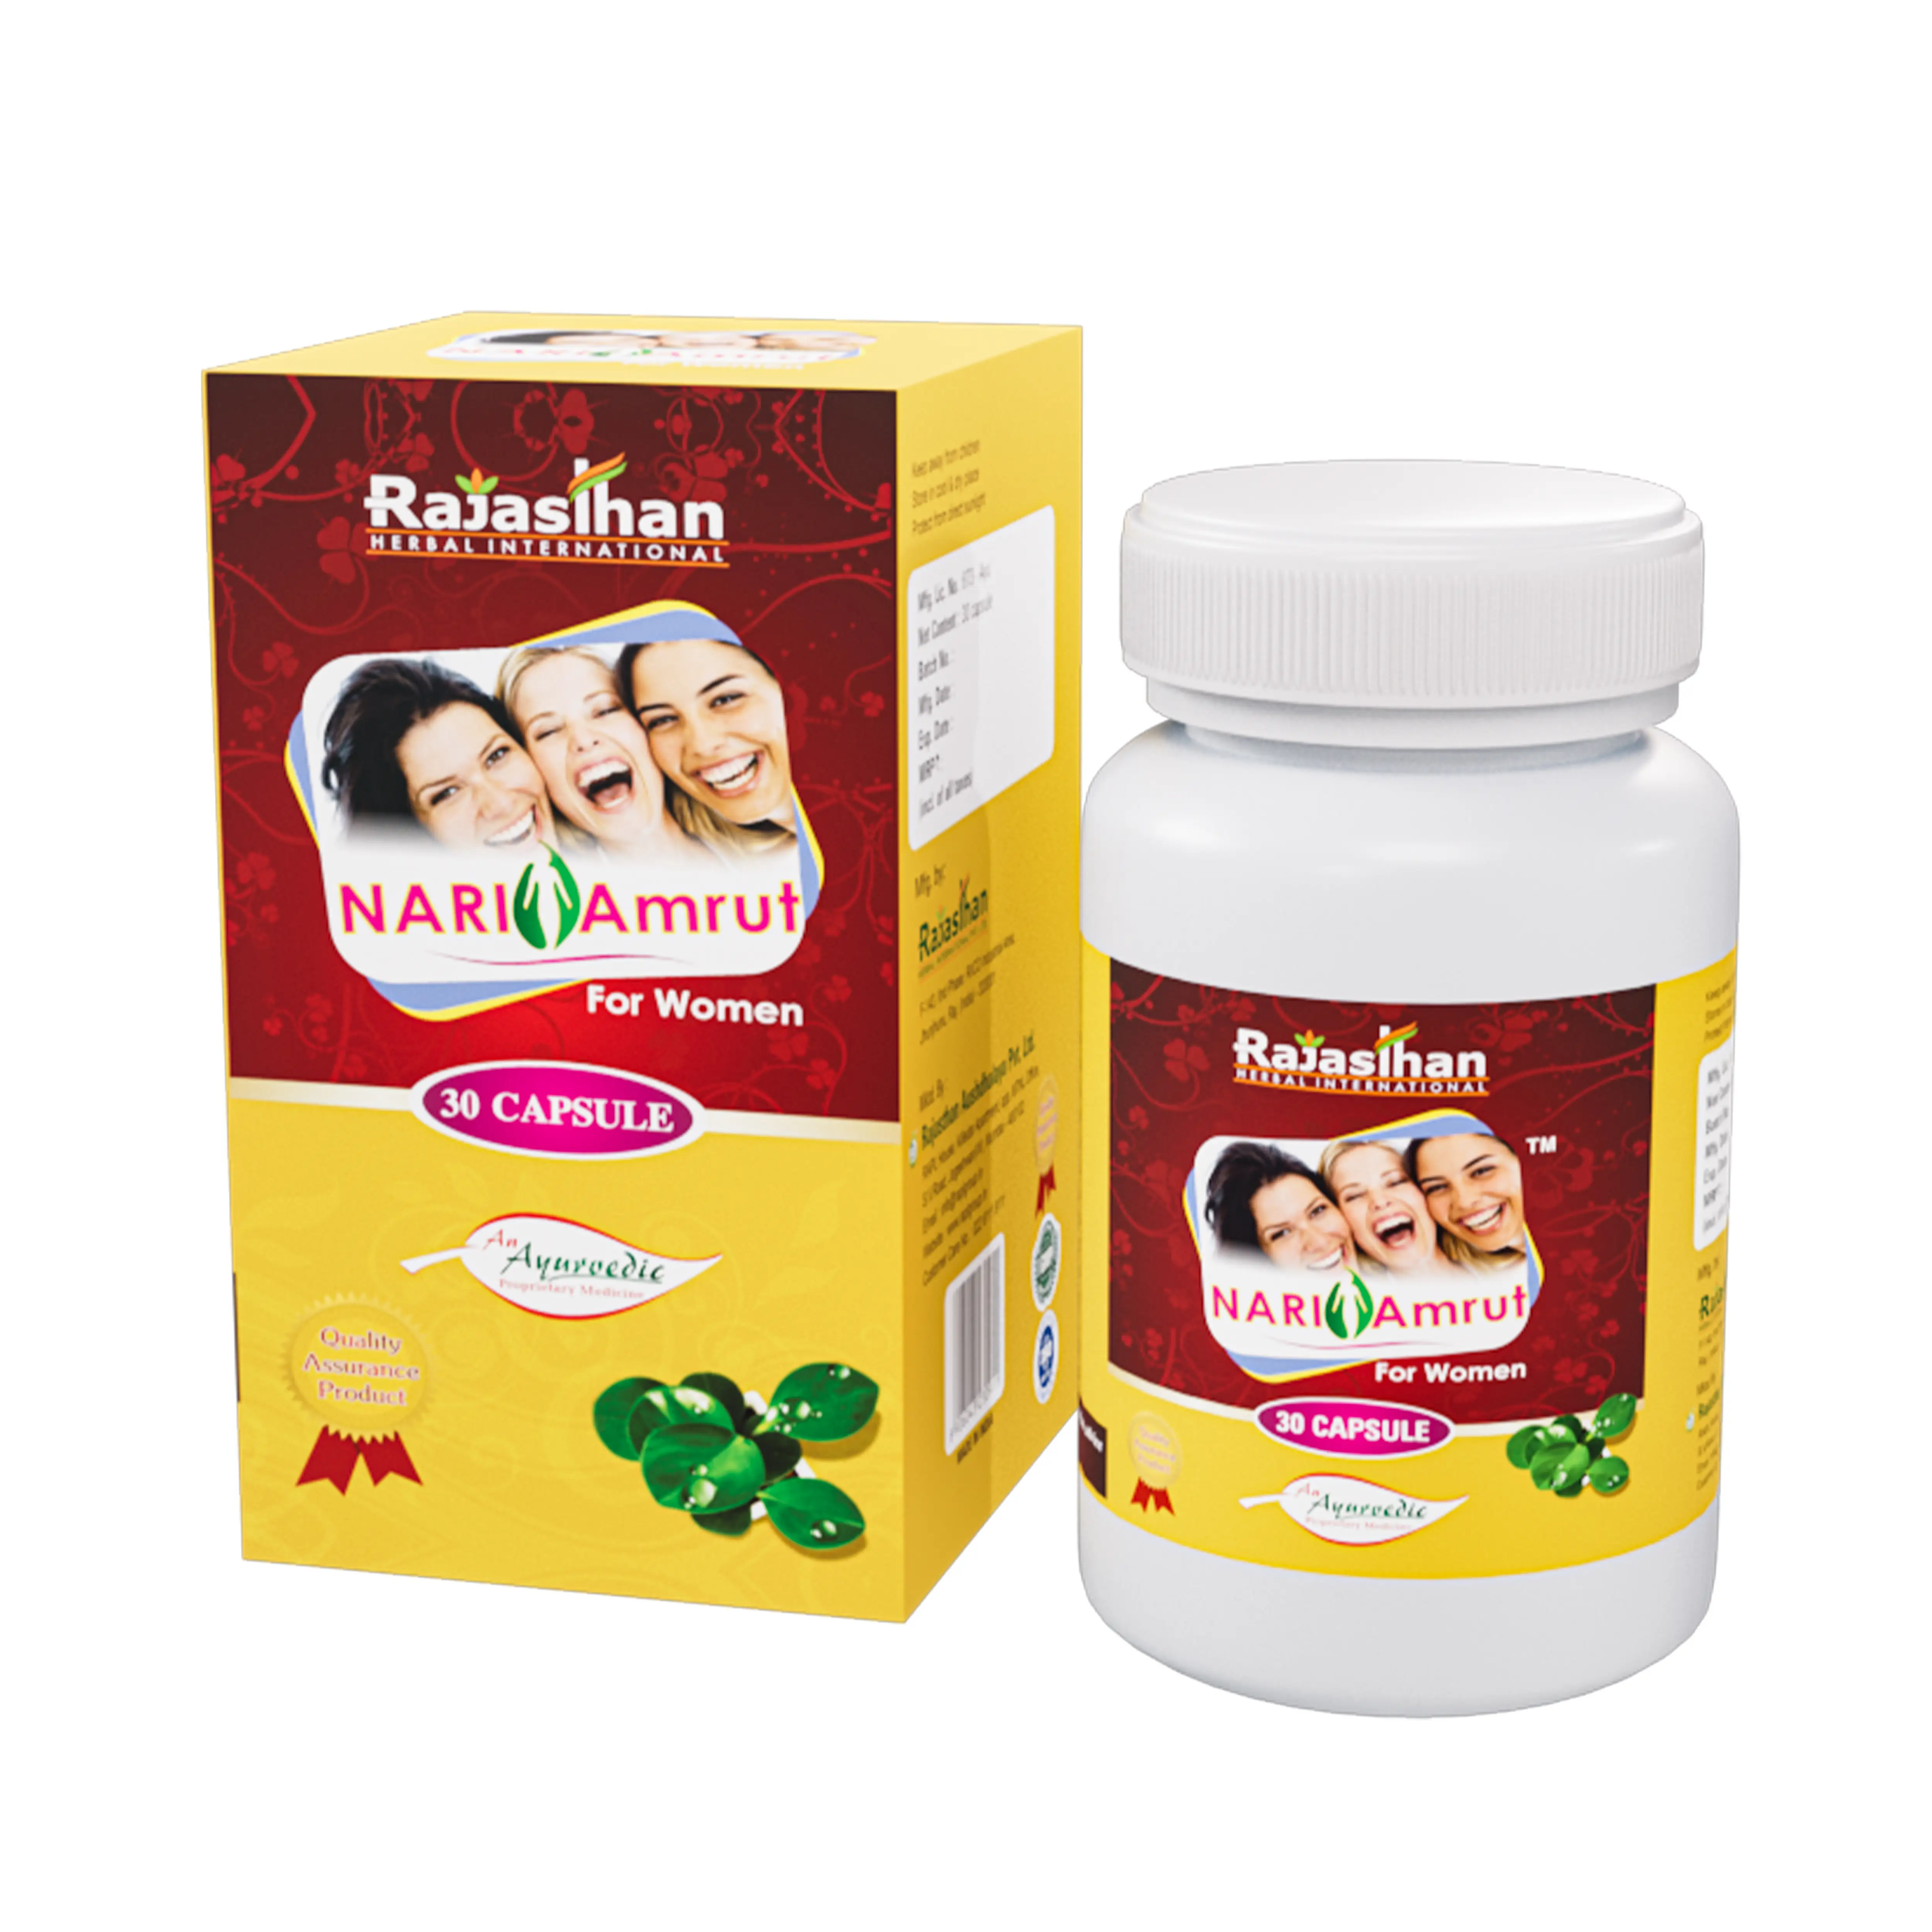 Nari Amrut 30 Capsule Rajasthan Herbal International Benefit